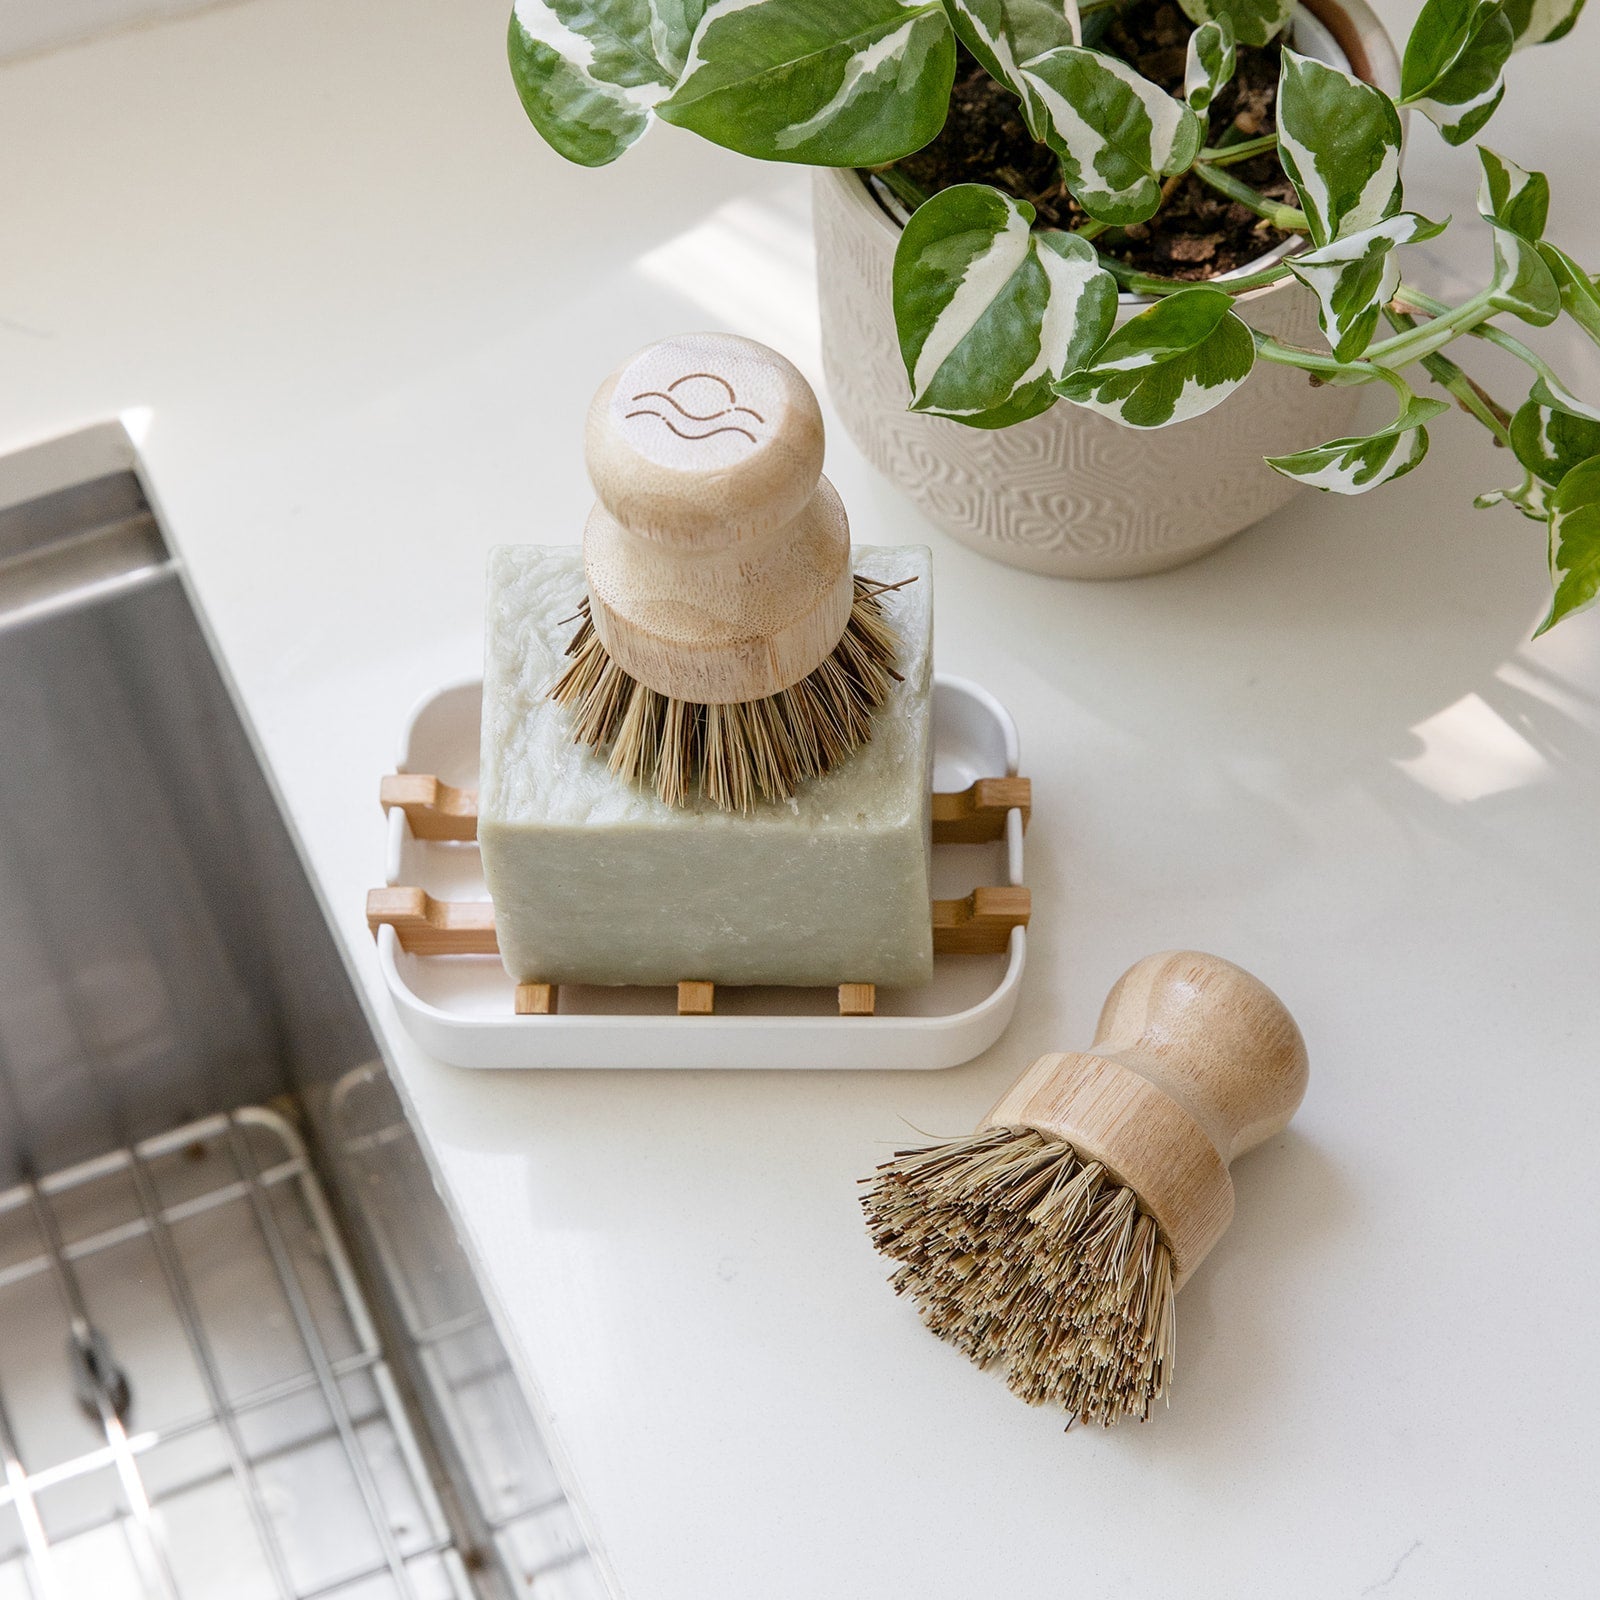 Plant-based Soap Dish Tray